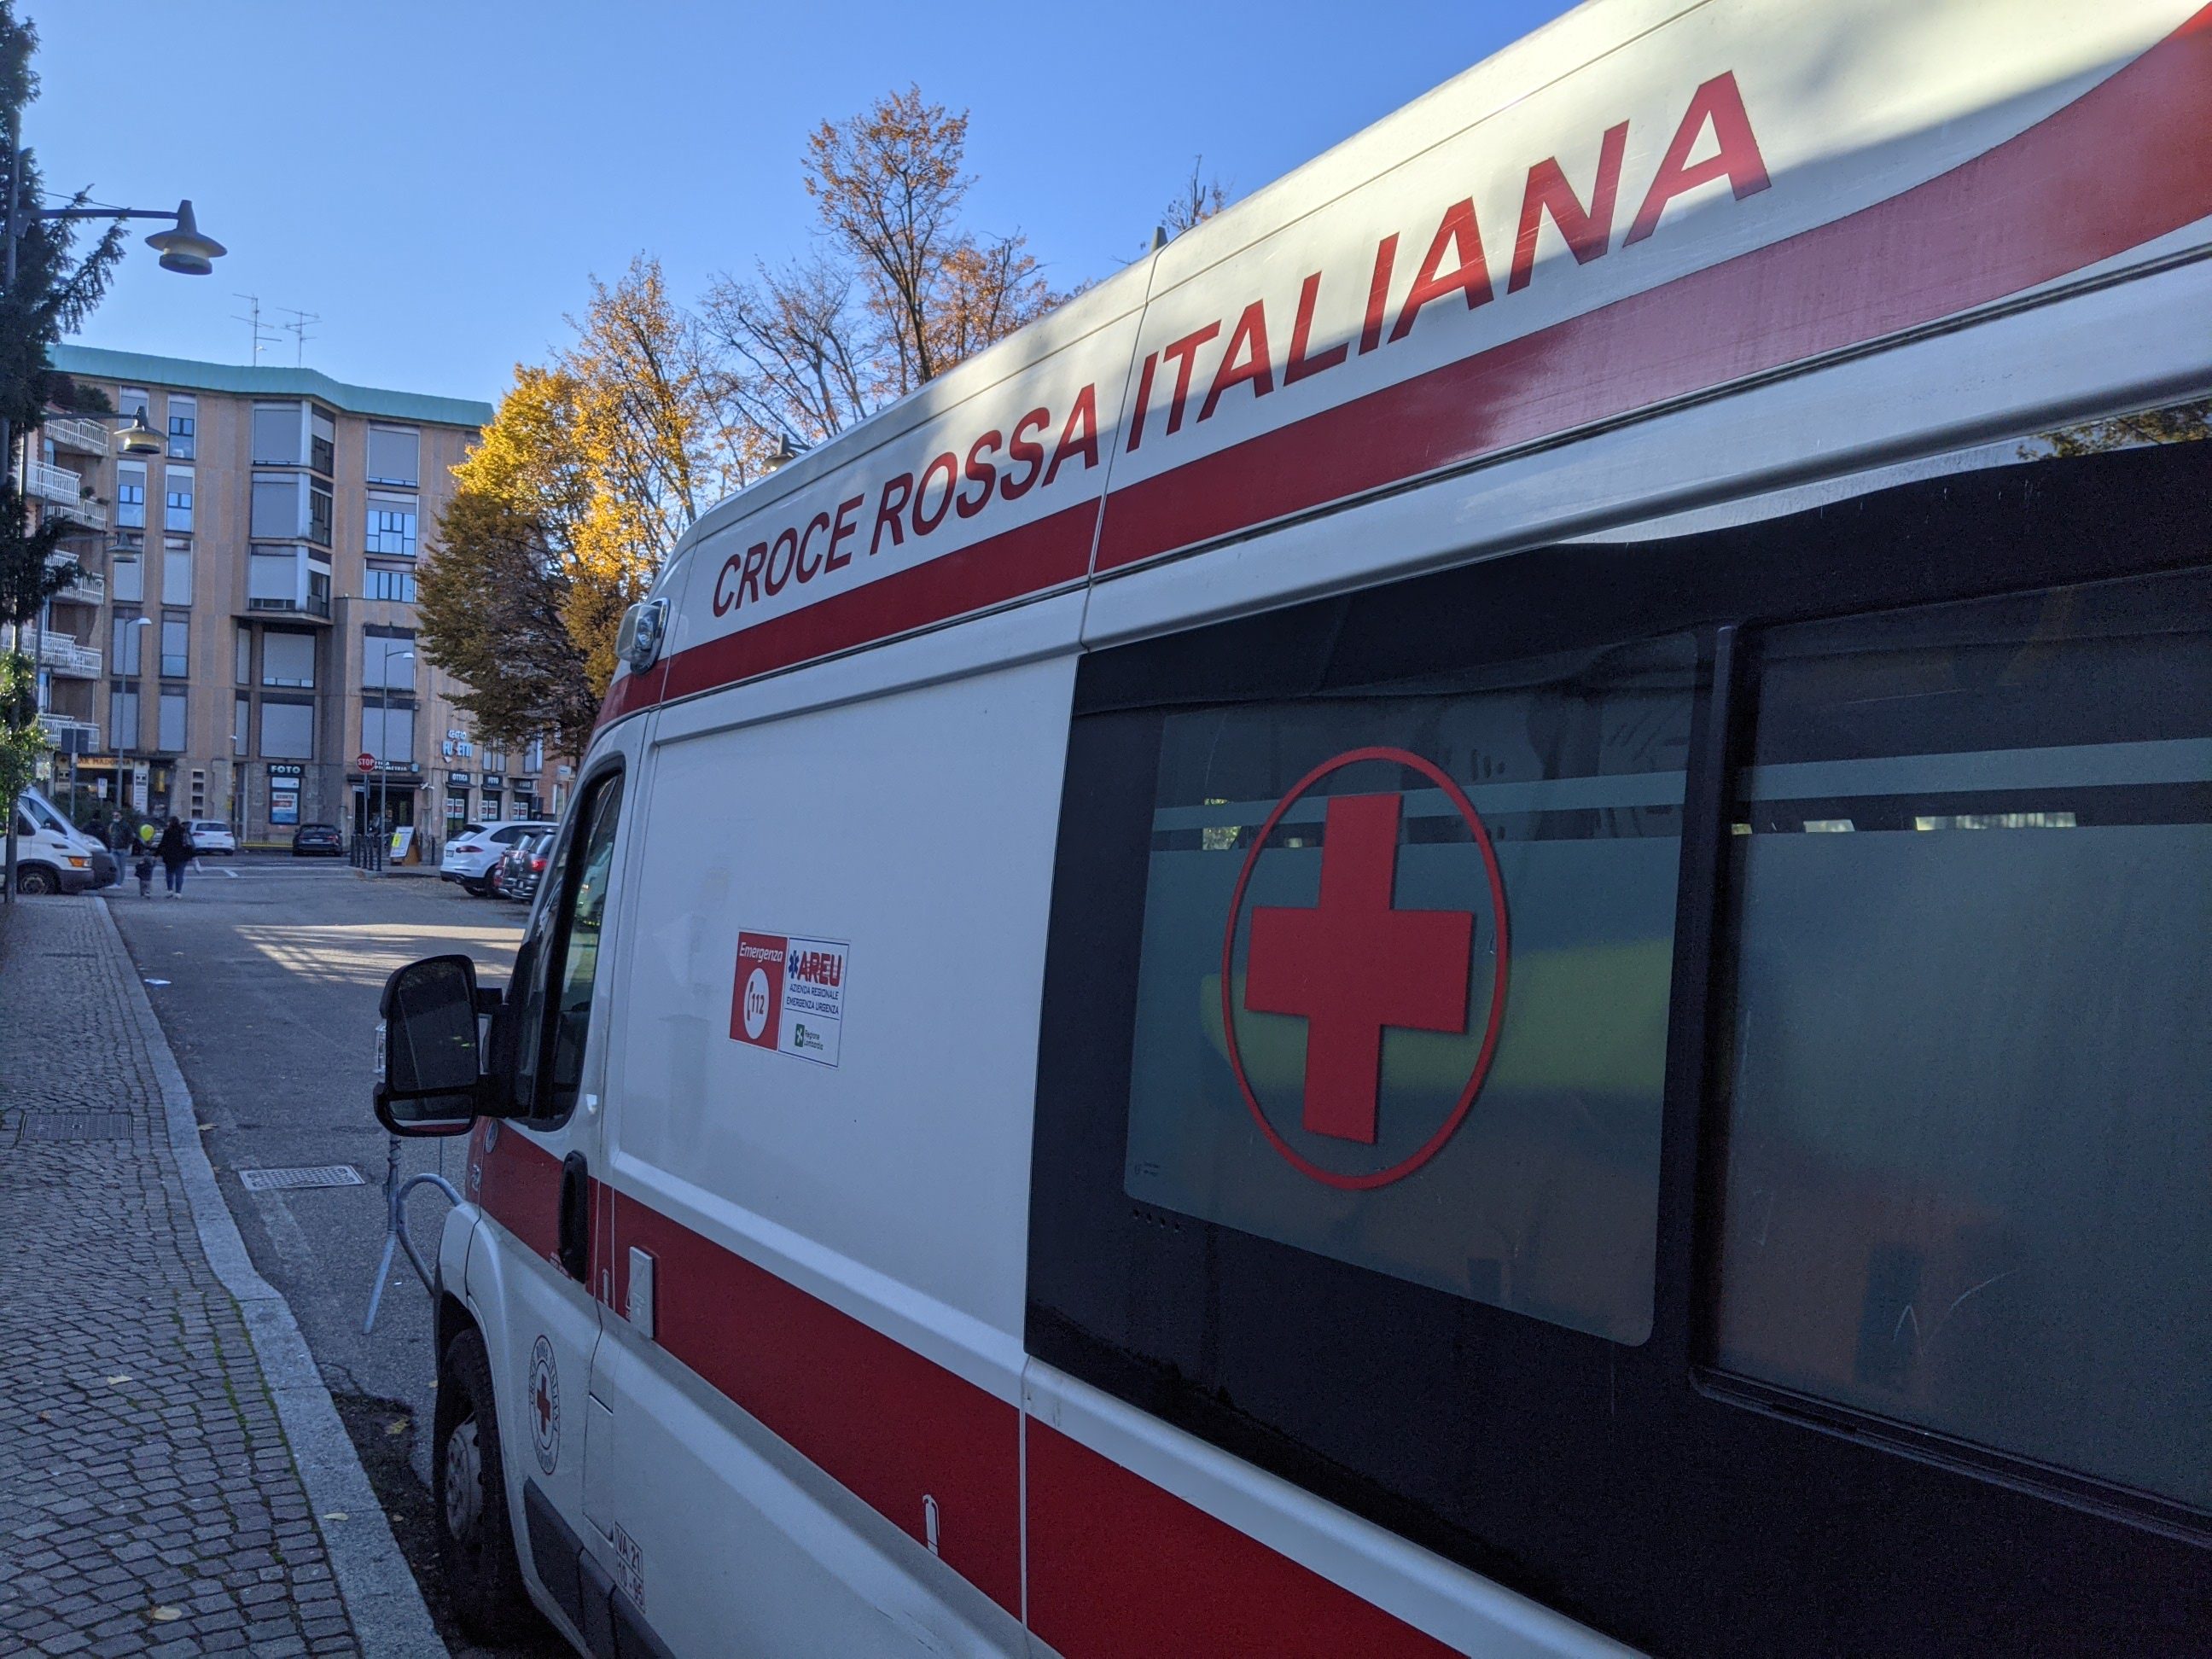 “Diventa volontario della Croce rossa”: reclutamento a Lomazzo